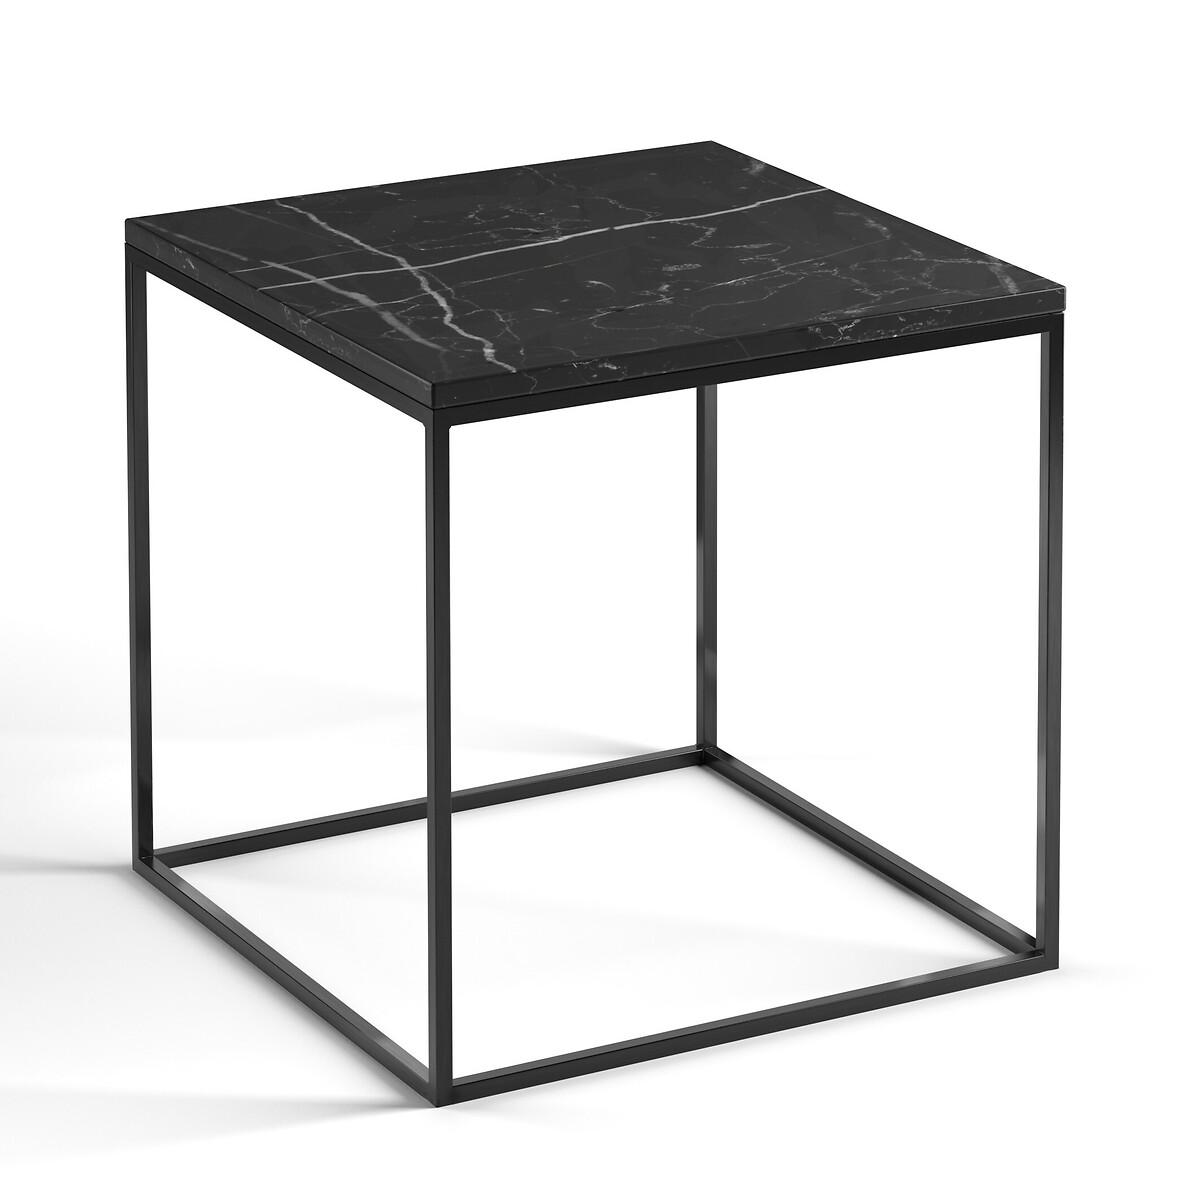 Столик со столешницей из мрамора Mahaut единый размер черный столик журнальный со столешницей из мрамора янтарного цвета madrigal